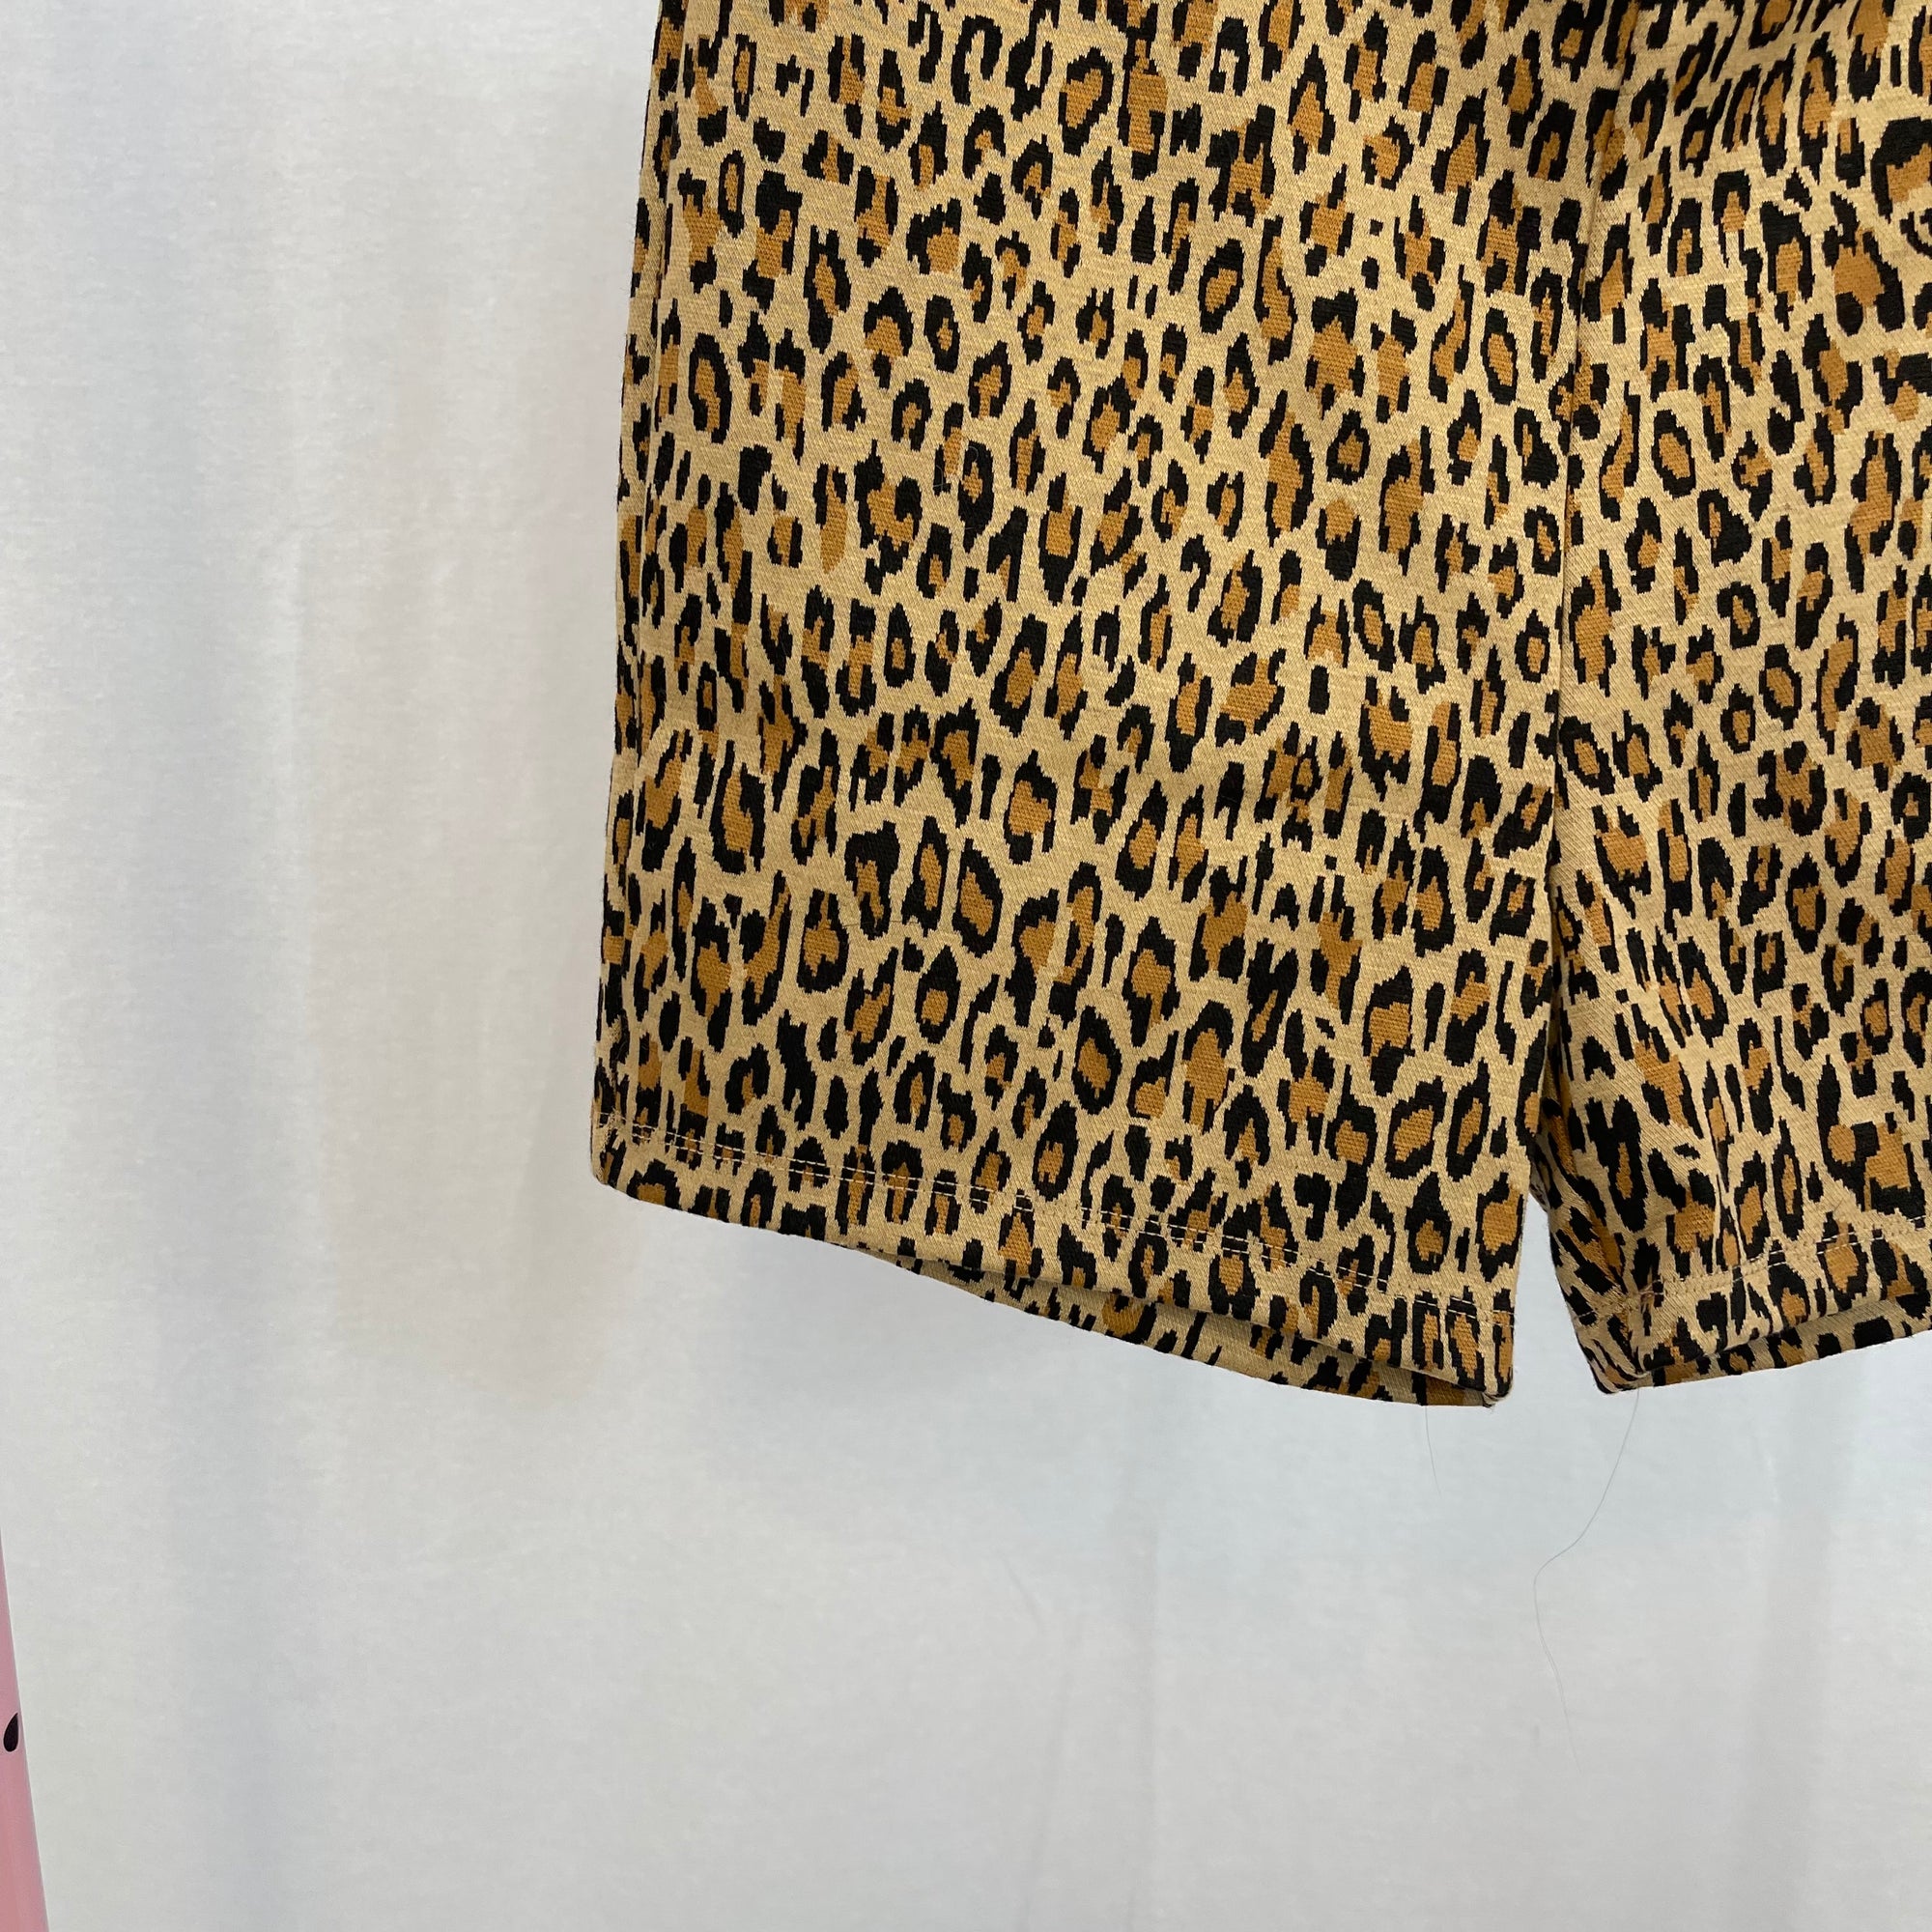 NWT Lovers + Friends Olivia Leopard Print Biker Shorts size Medium